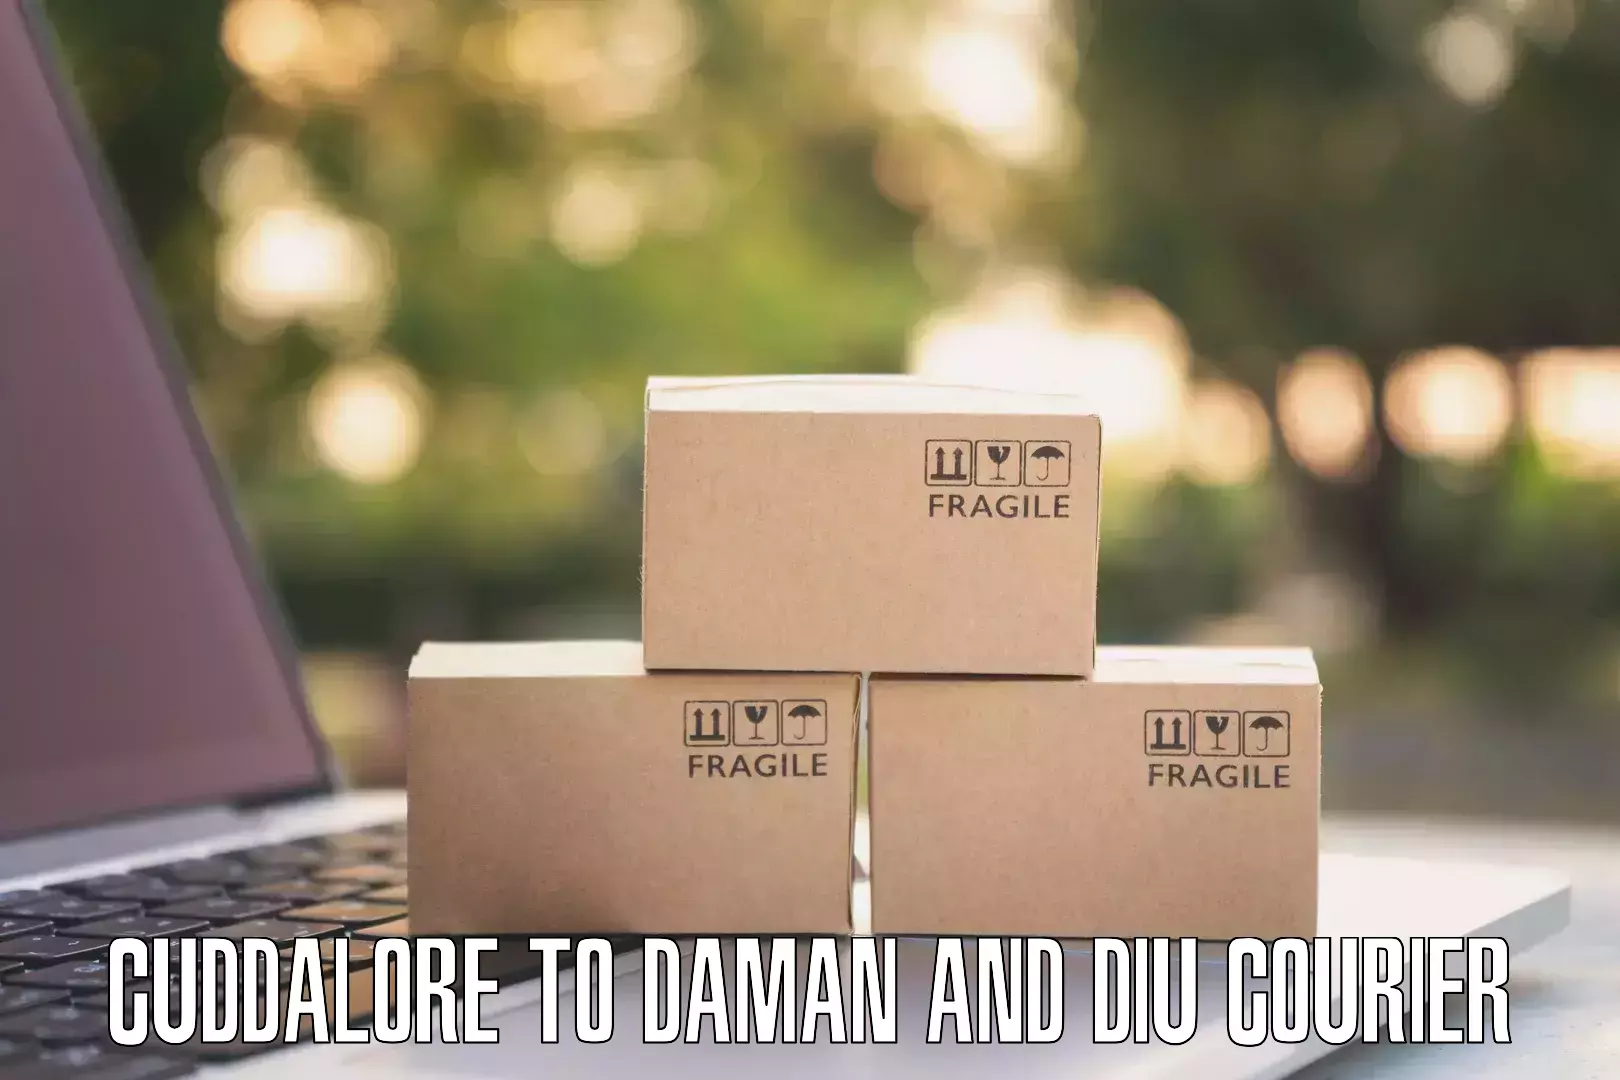 Cargo delivery service Cuddalore to Daman